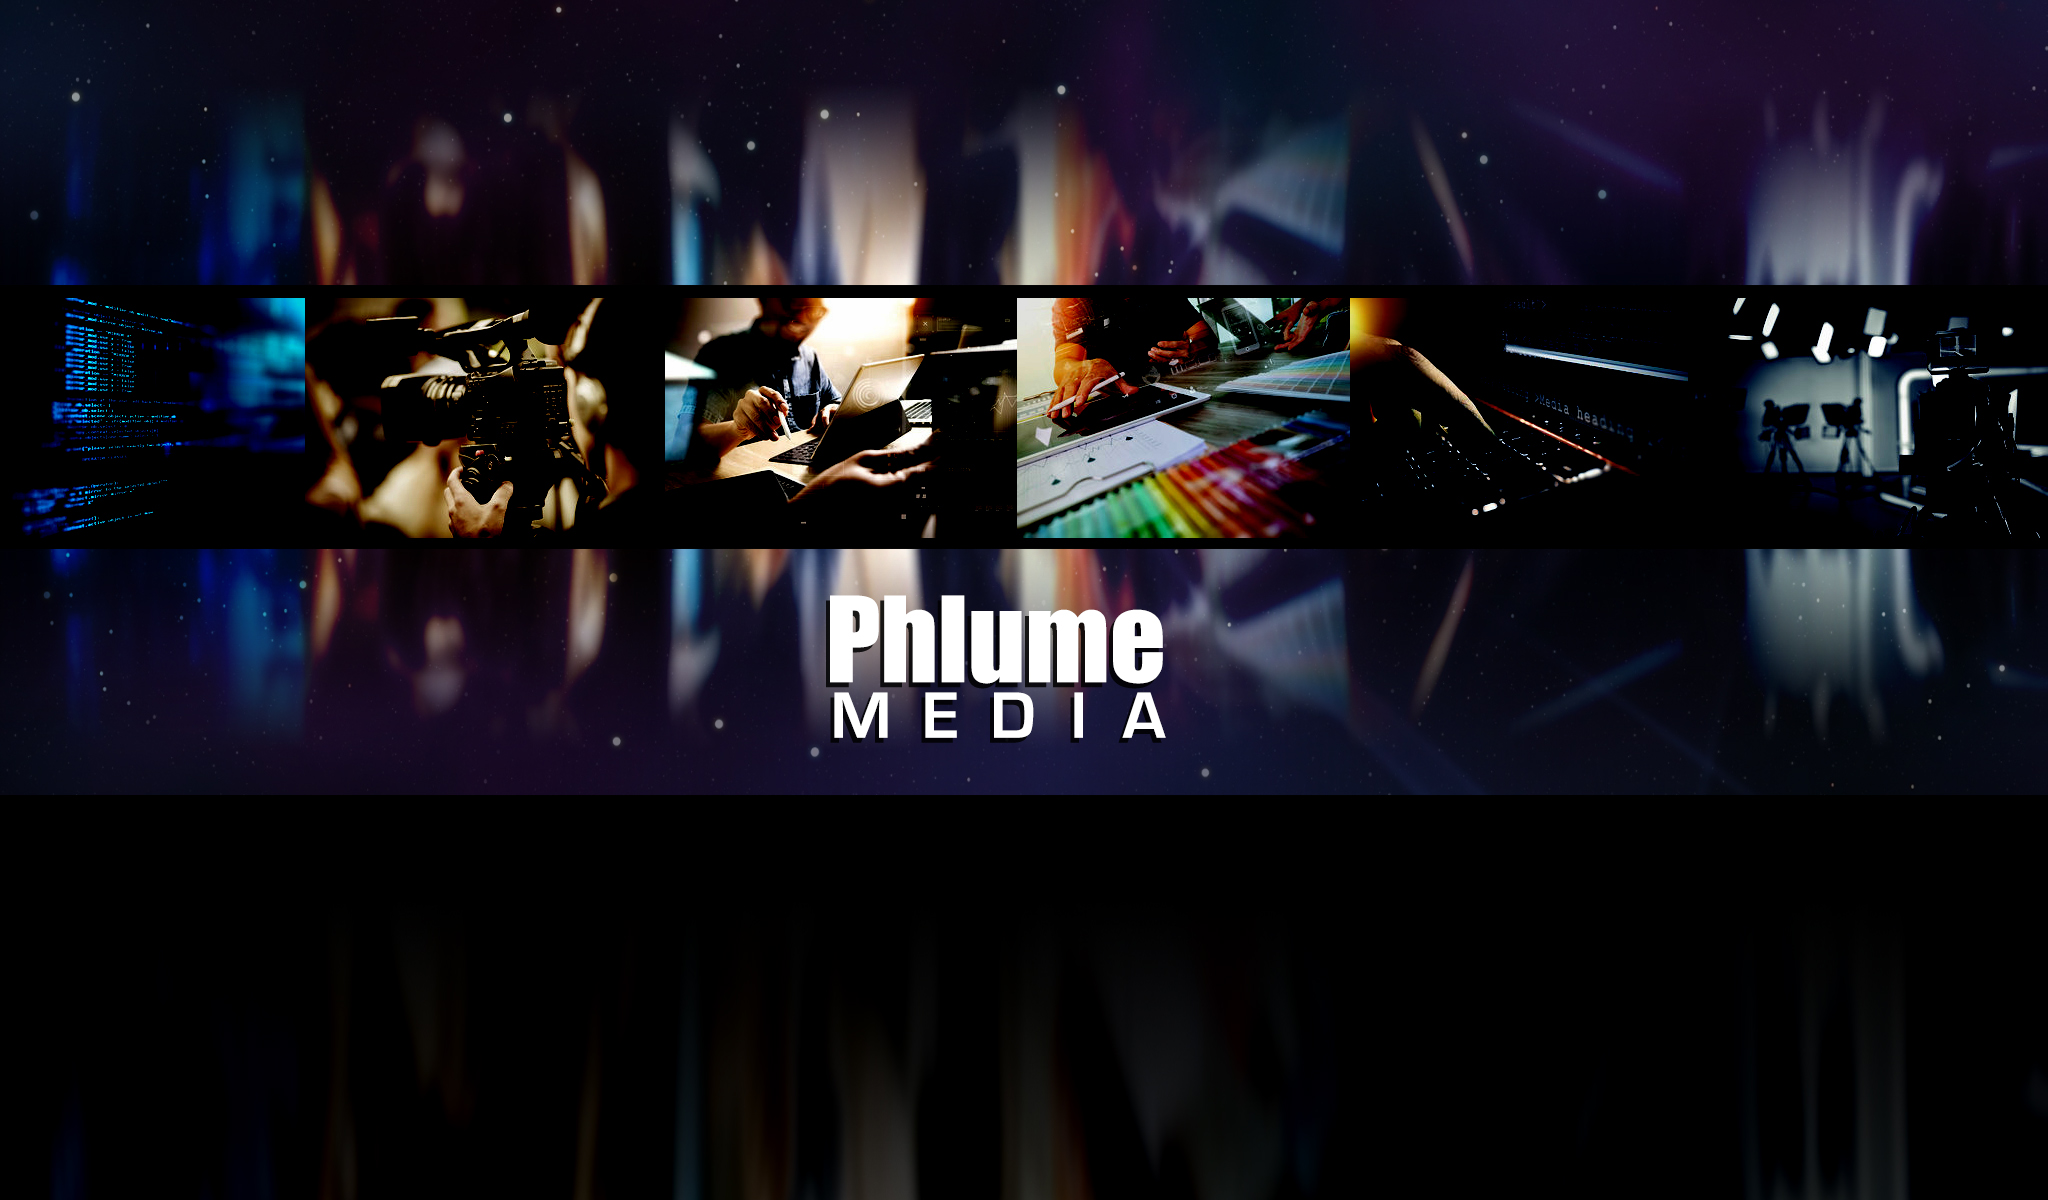 Phlume